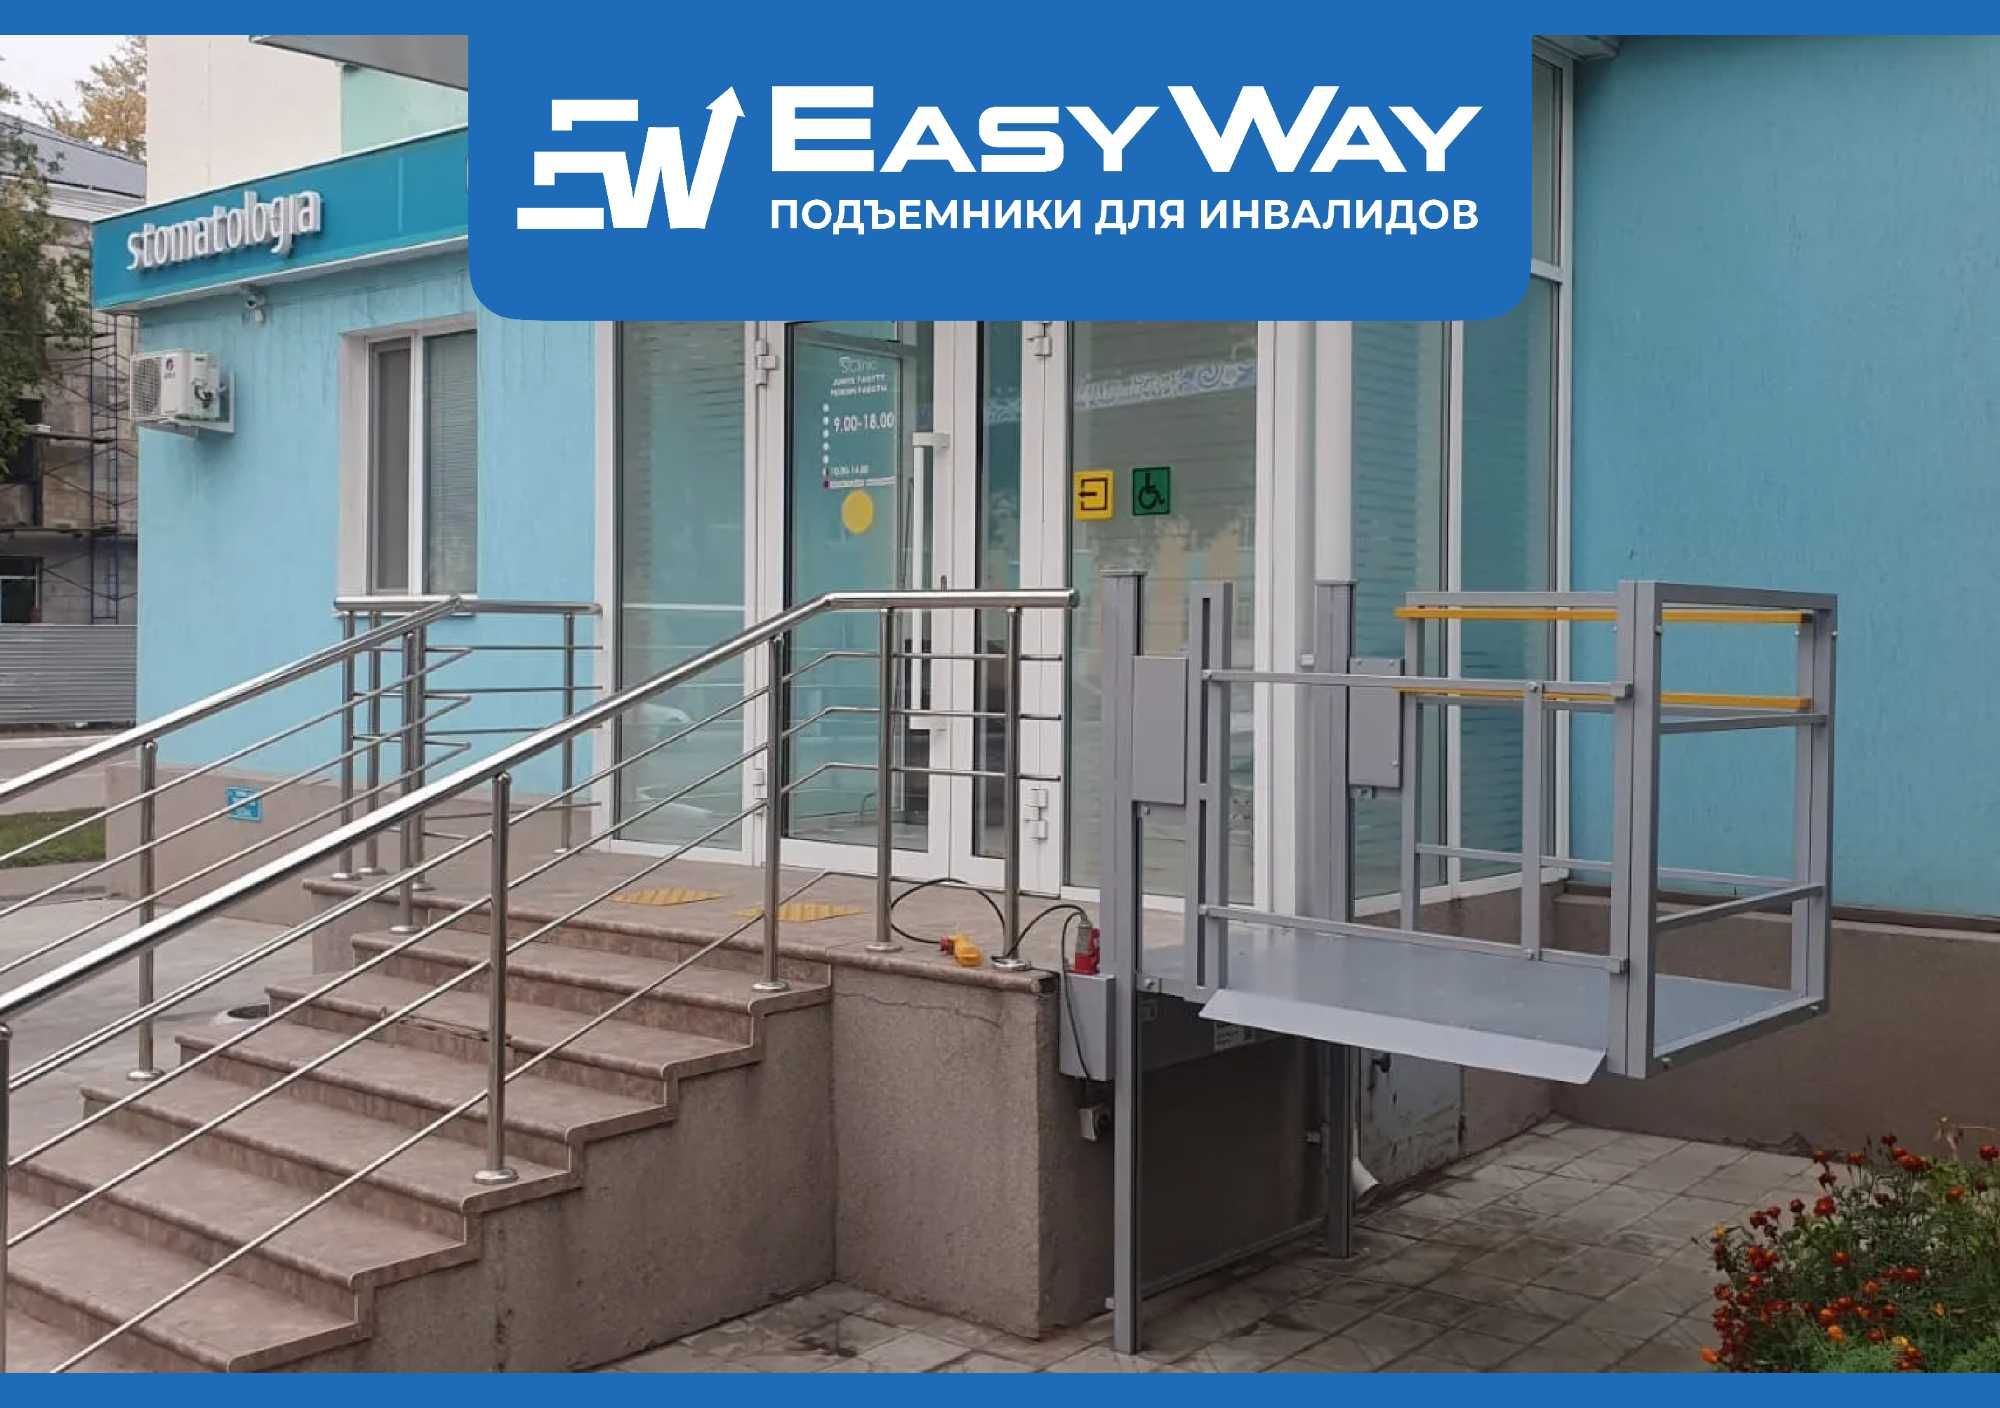 EasyWay: Электрические подъёмники для инвалидов (г. Атырау)